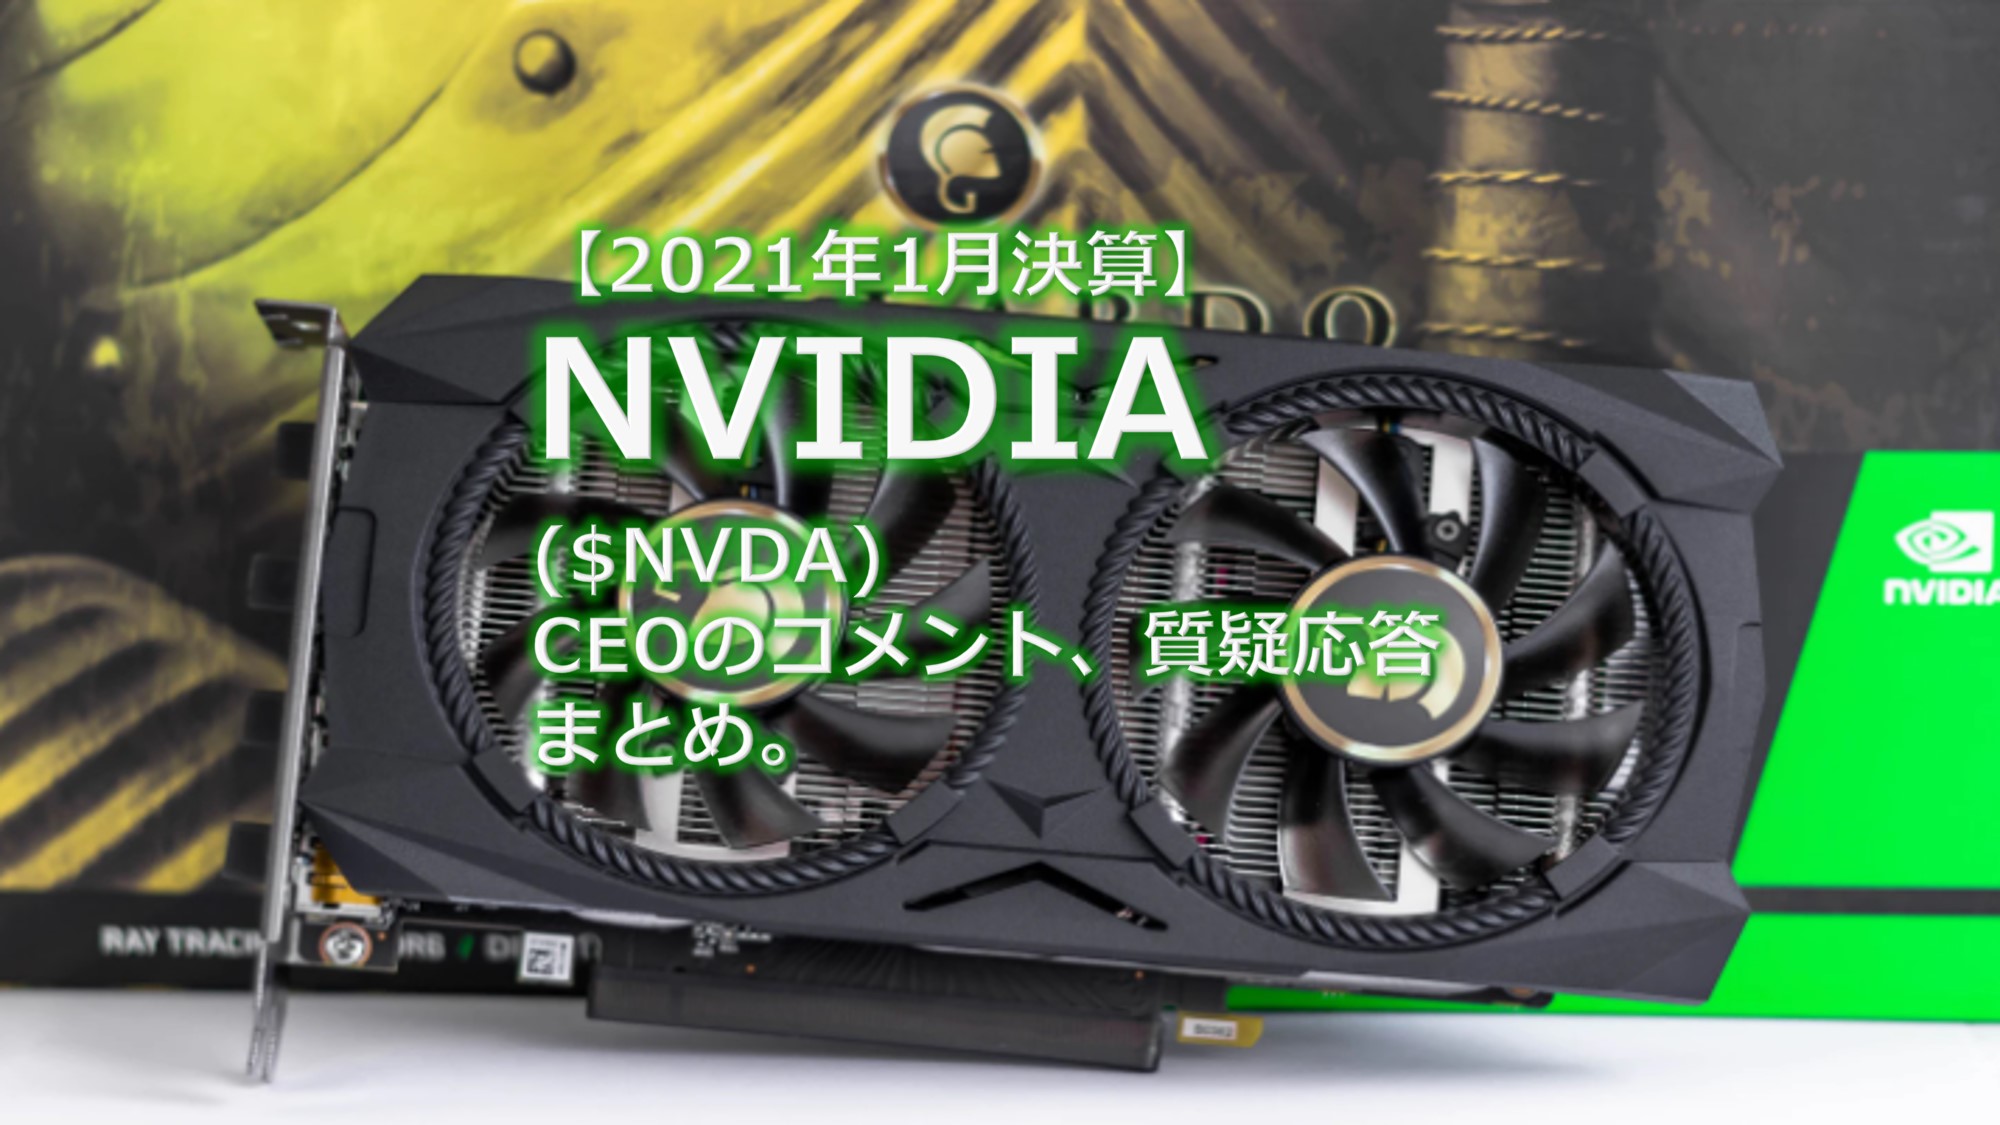 Nvidia 株価